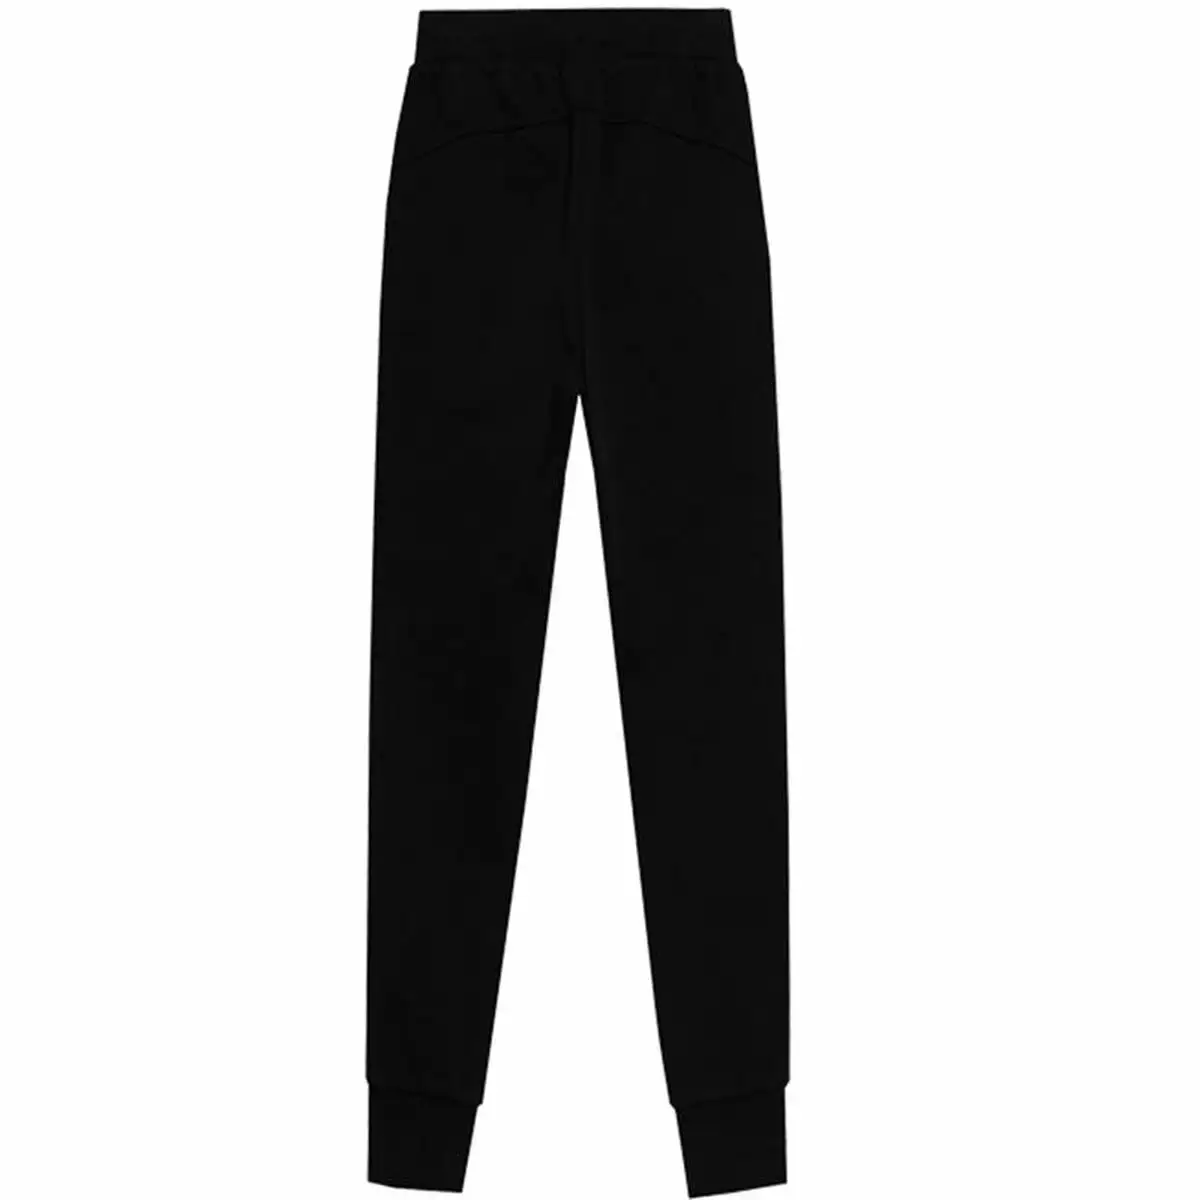 Pantalon de sport long 4f jogger swatpants noir_5761. DIAYTAR SENEGAL - L'Art de Vivre le Shopping Inspiré. Parcourez notre catalogue et choisissez des produits qui reflètent votre passion pour la beauté et l'authenticité.